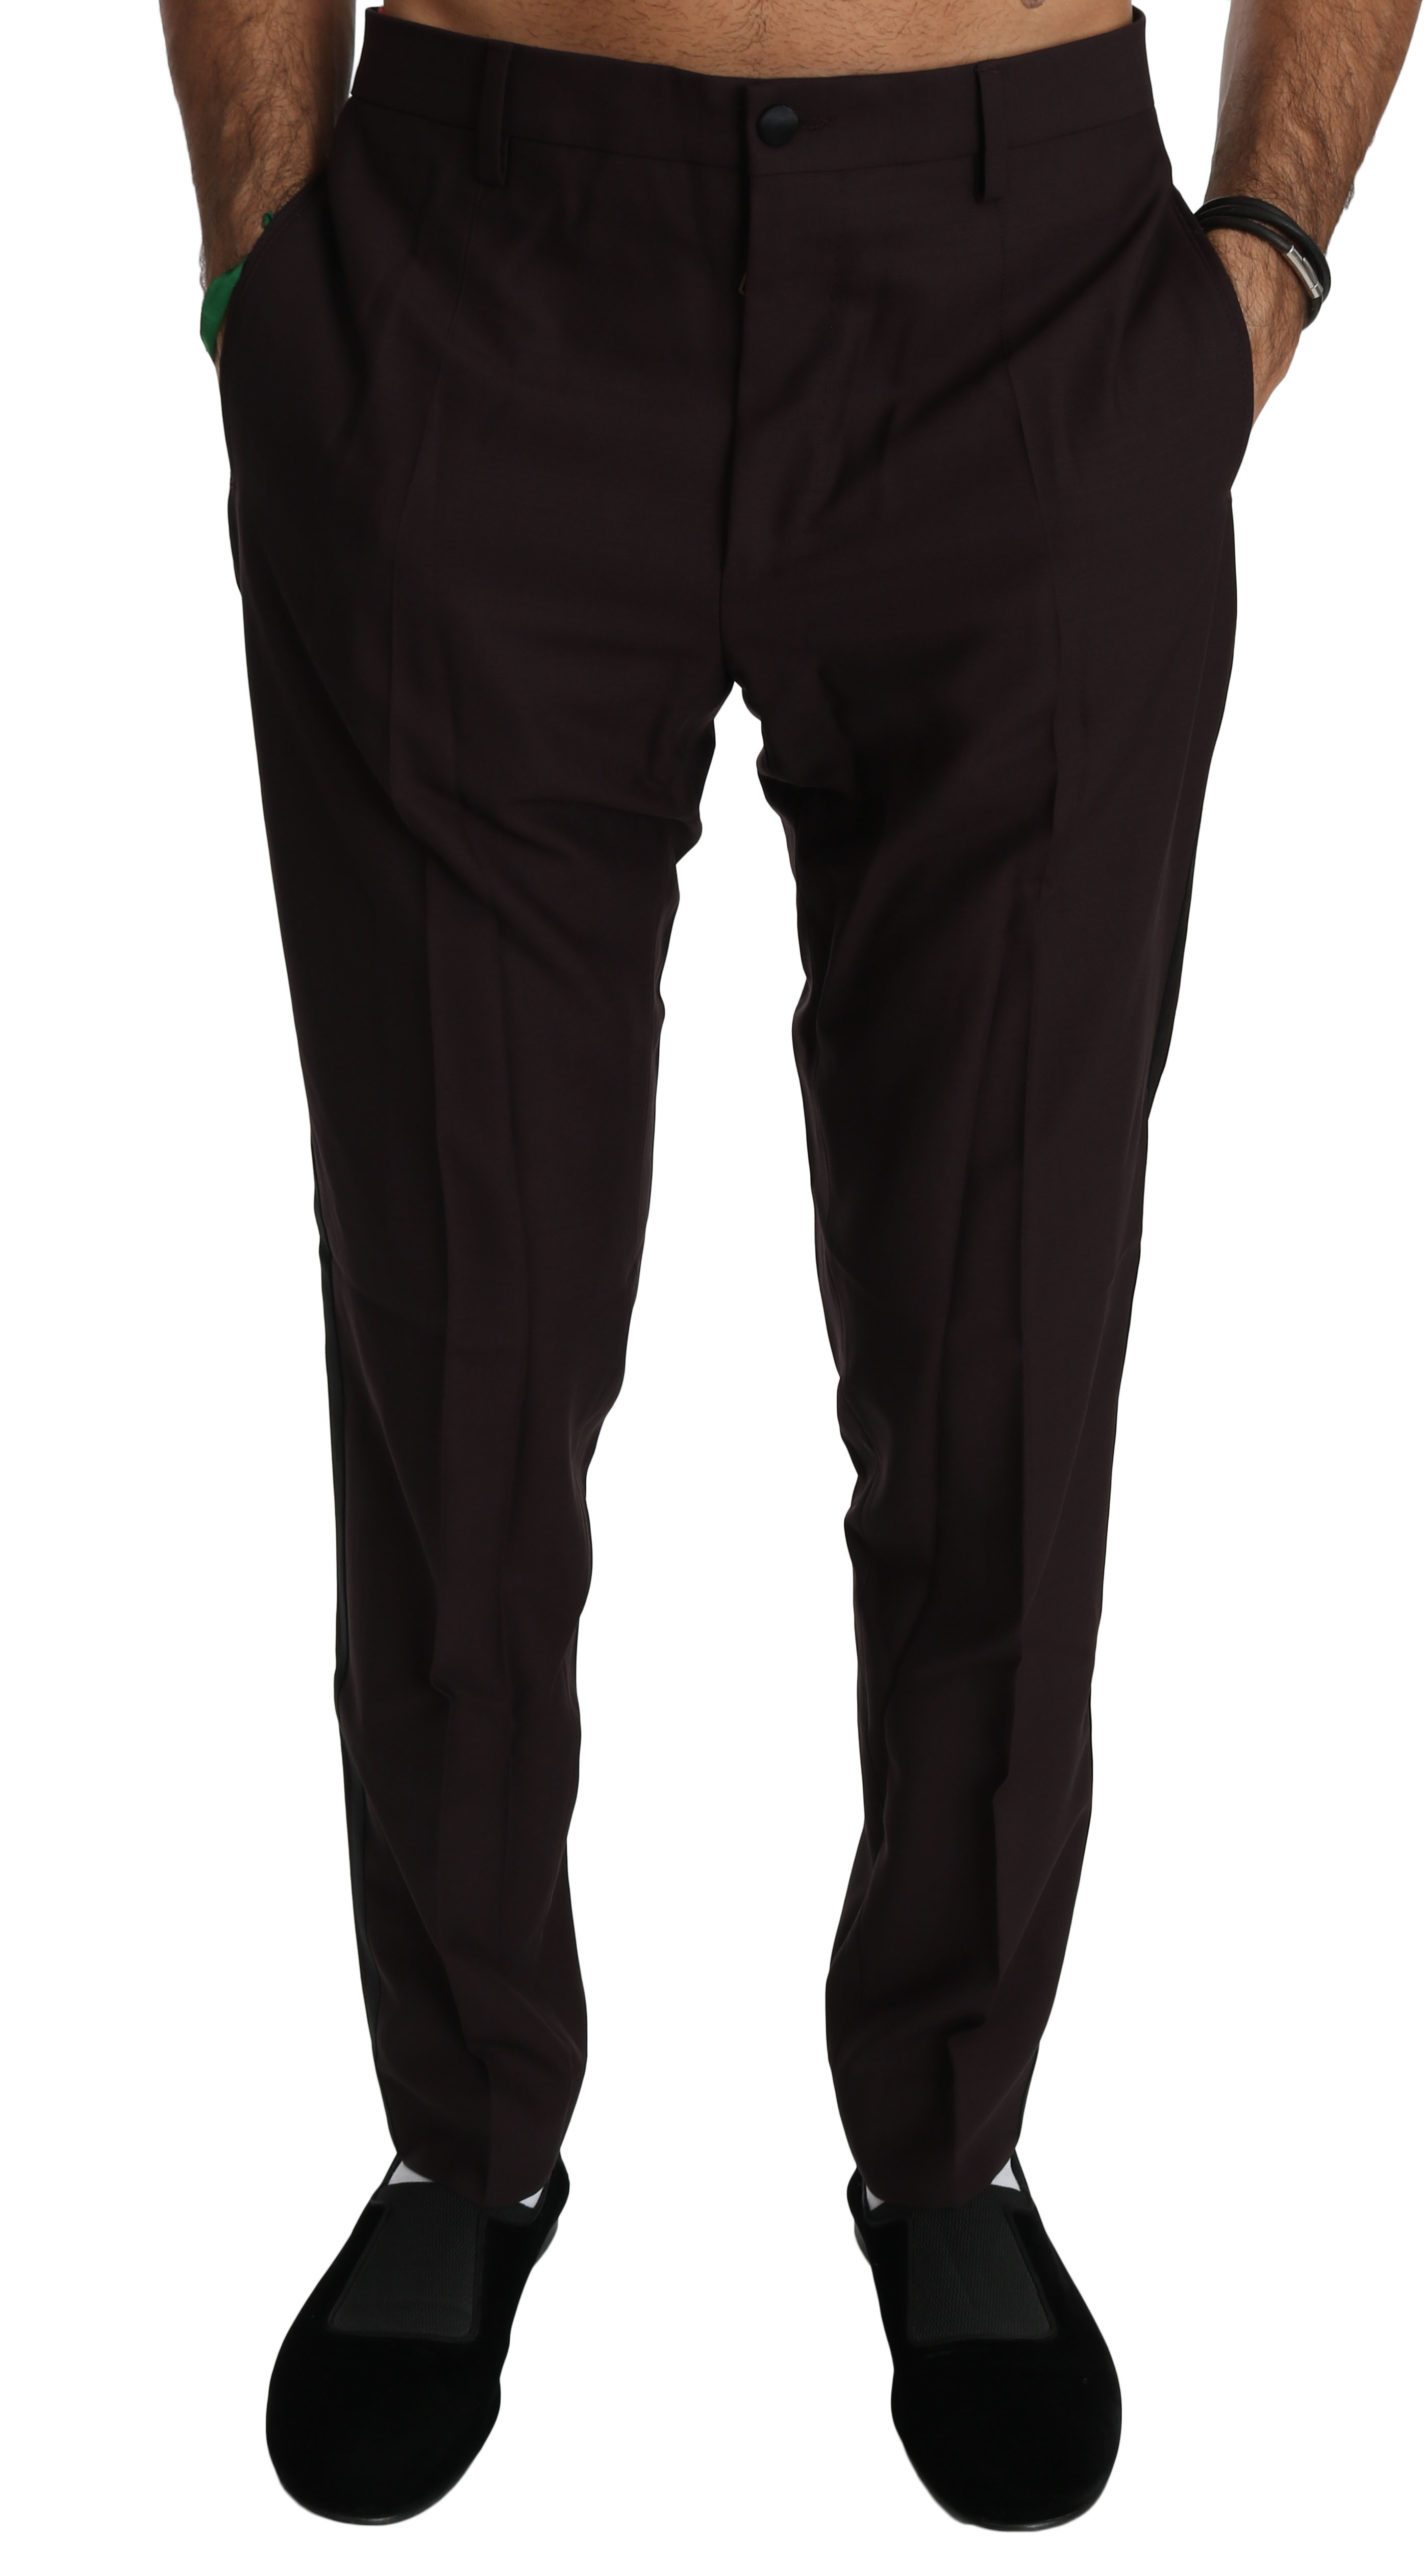 Dolce & Gabbana Men's Striped Cotton Dress Formal Trouser Brown PAN70764 - IT50 | L